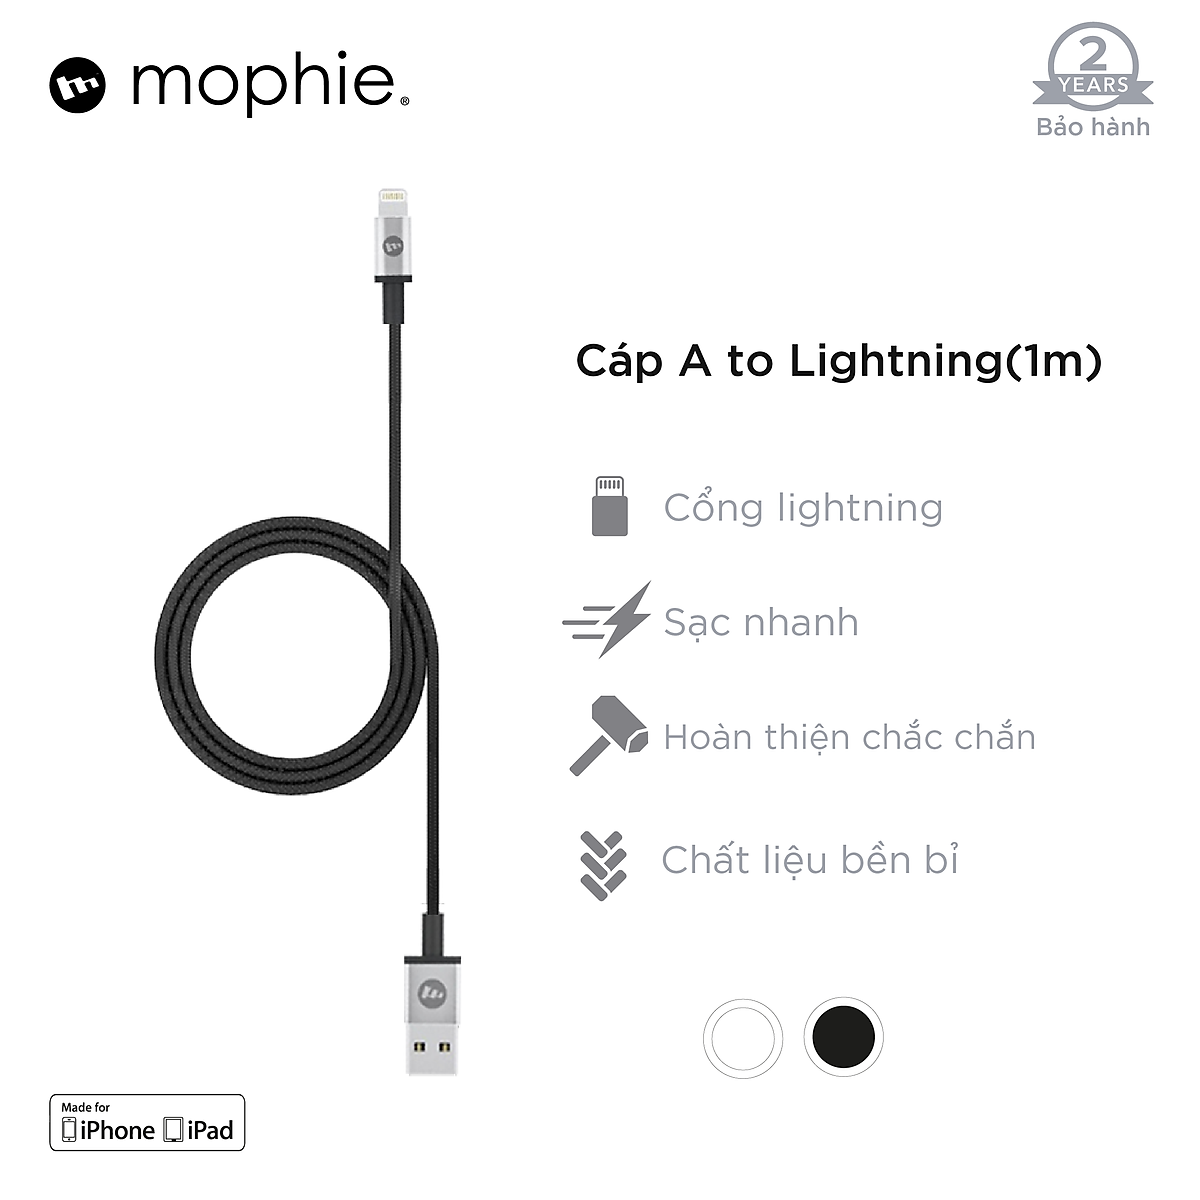 Bộ Adapter Sạc Mophie 10W Kèm Cáp USB-A to Lightning 1m Dành Cho iPhone/iPad  -